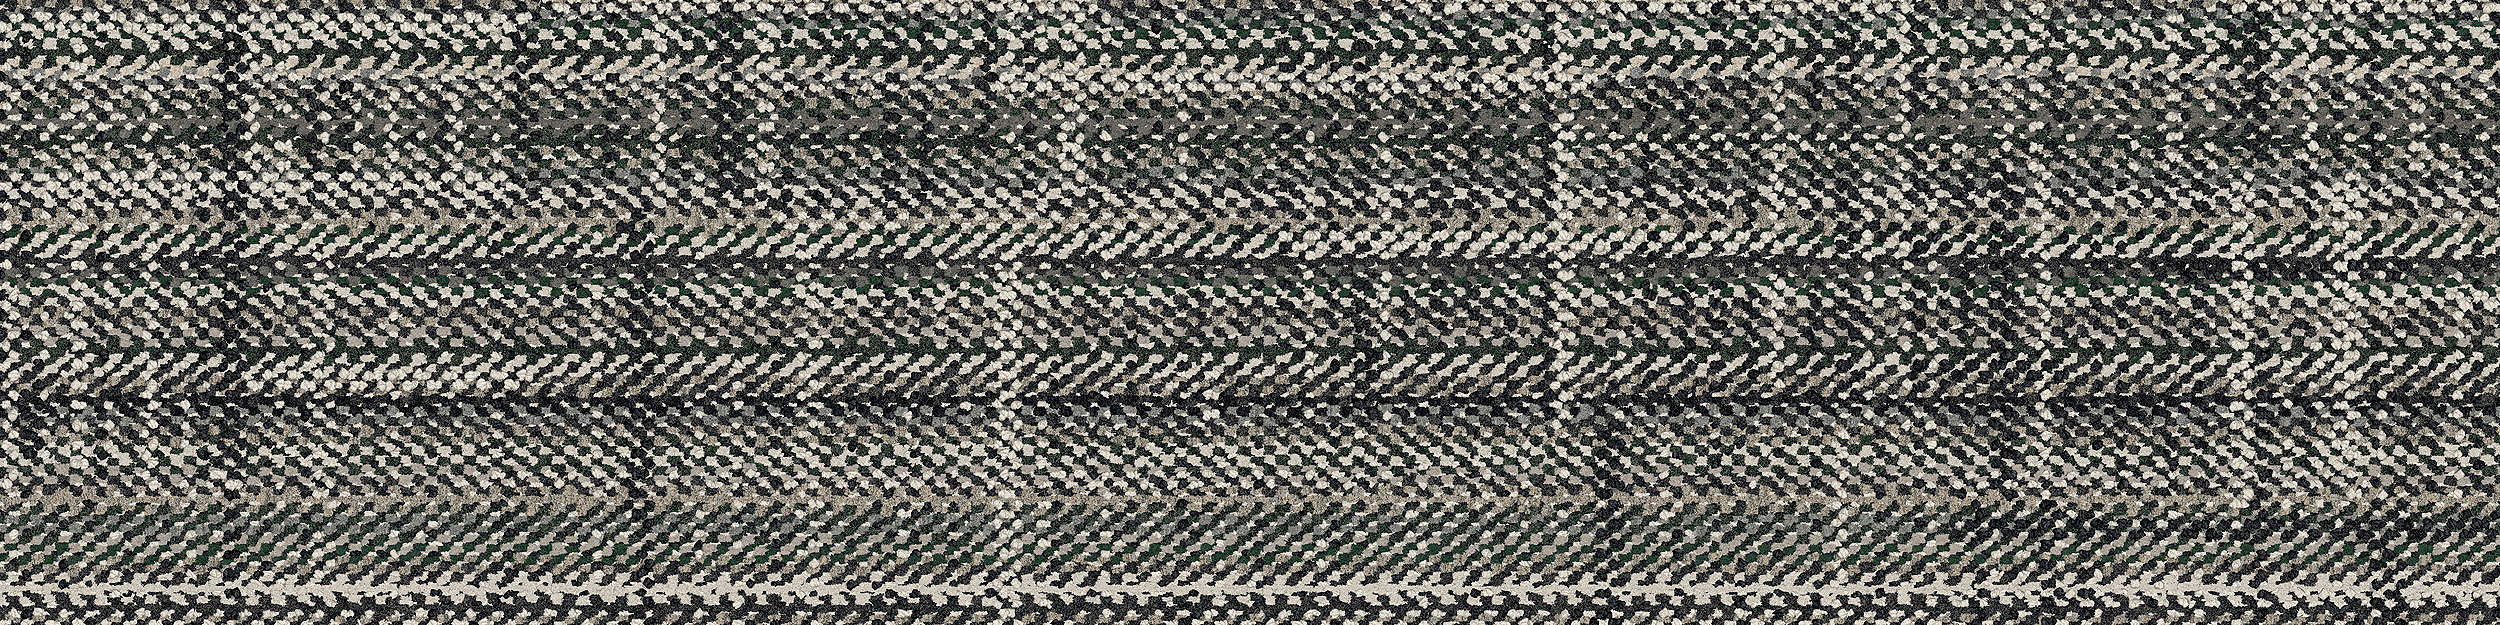 French Seams Carpet Tile In Compiegne numéro d’image 7